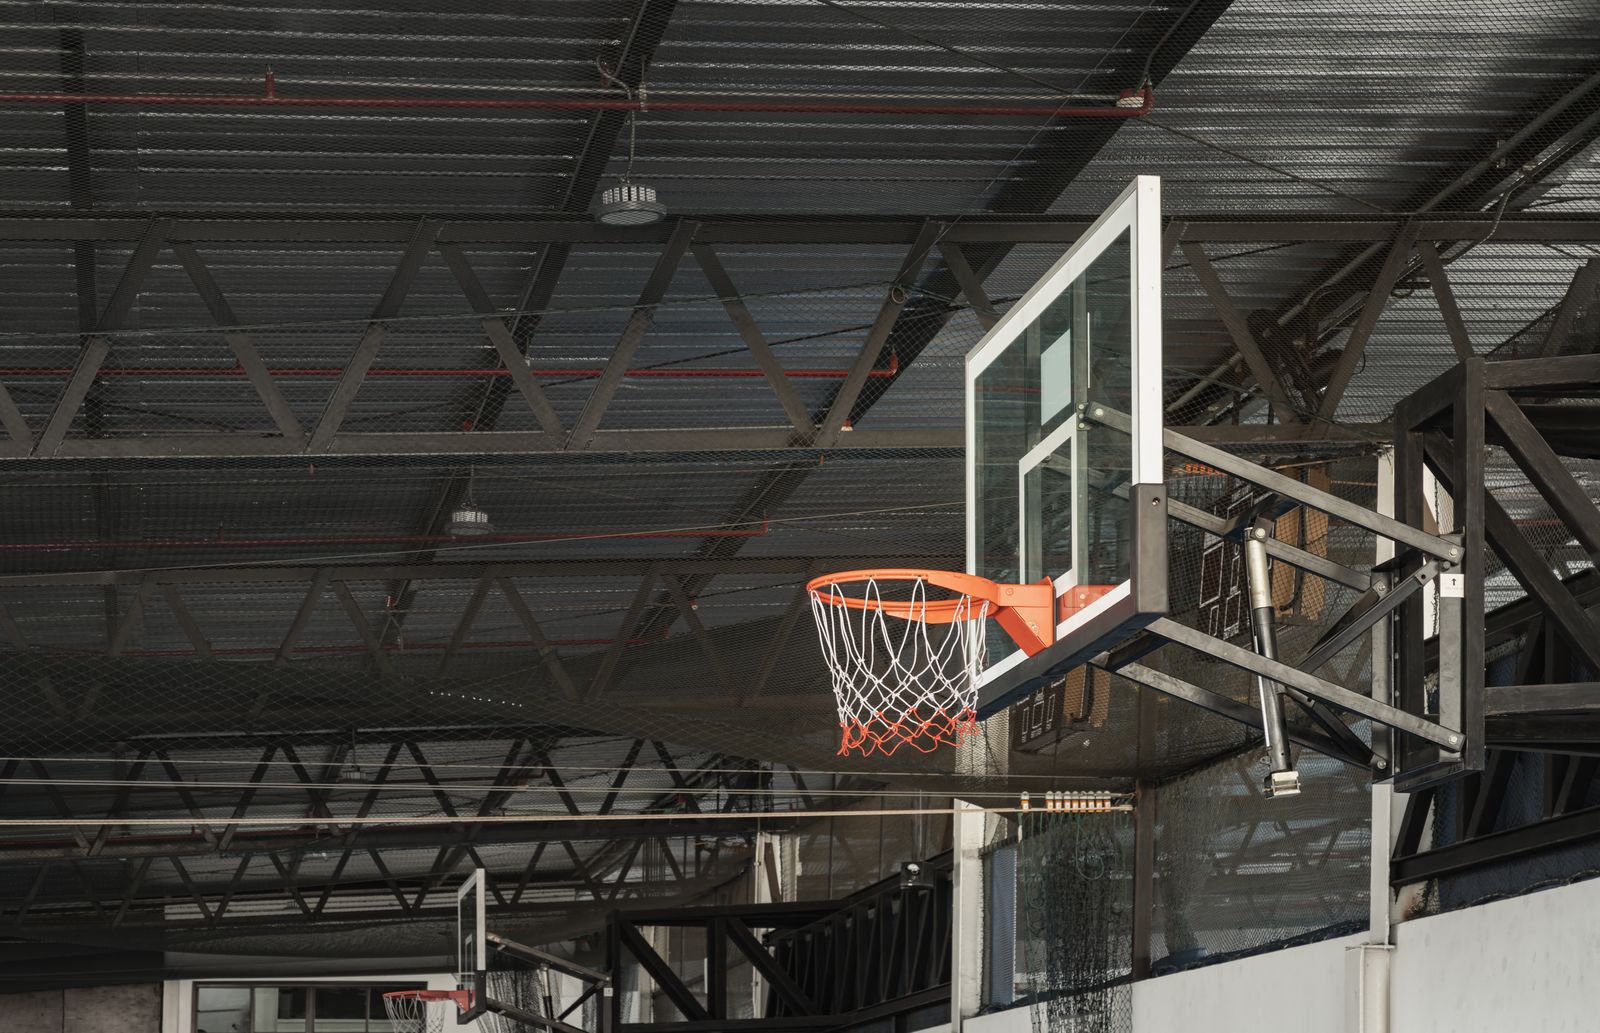 Wall-mounted Basketball hoop and backboard